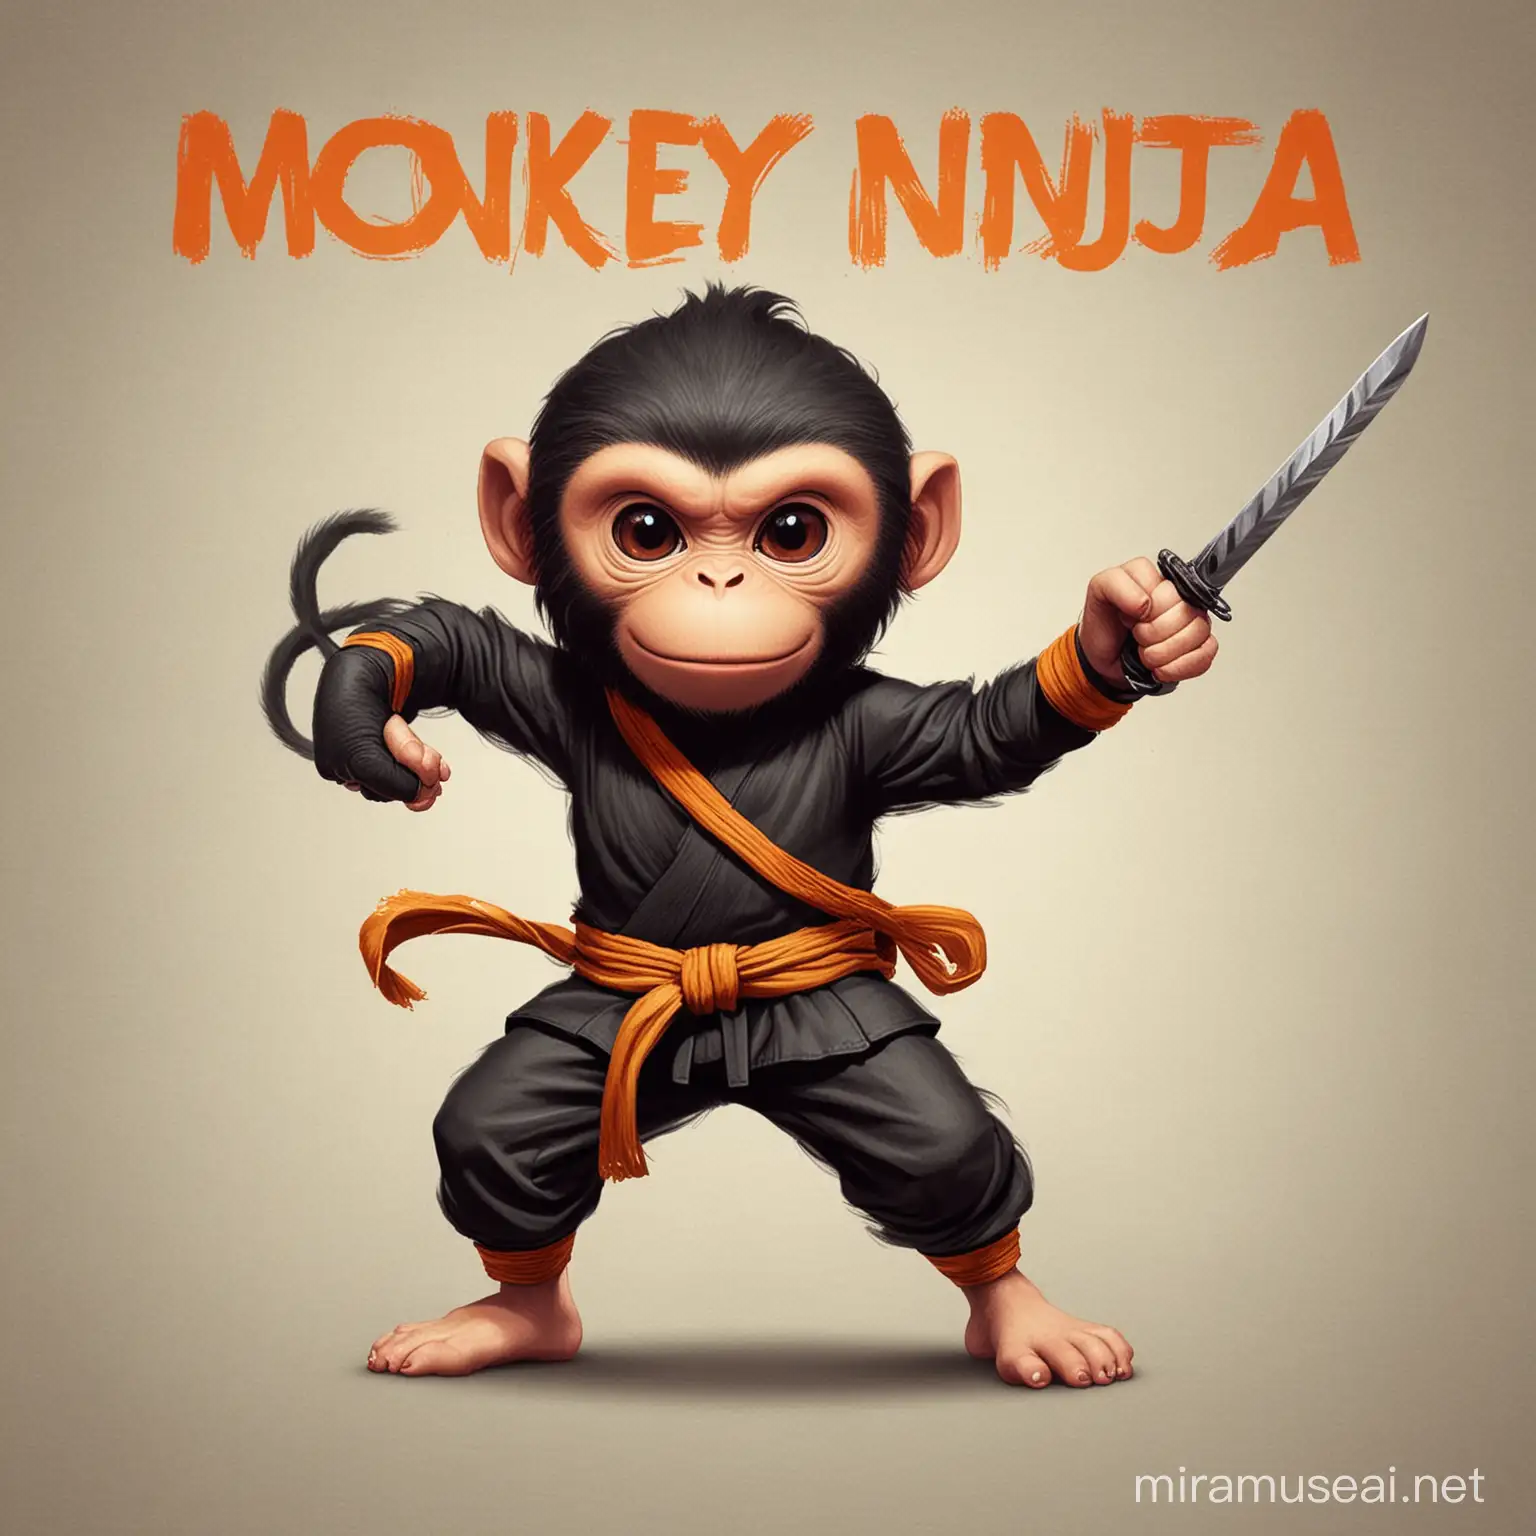 Monkey ninja 